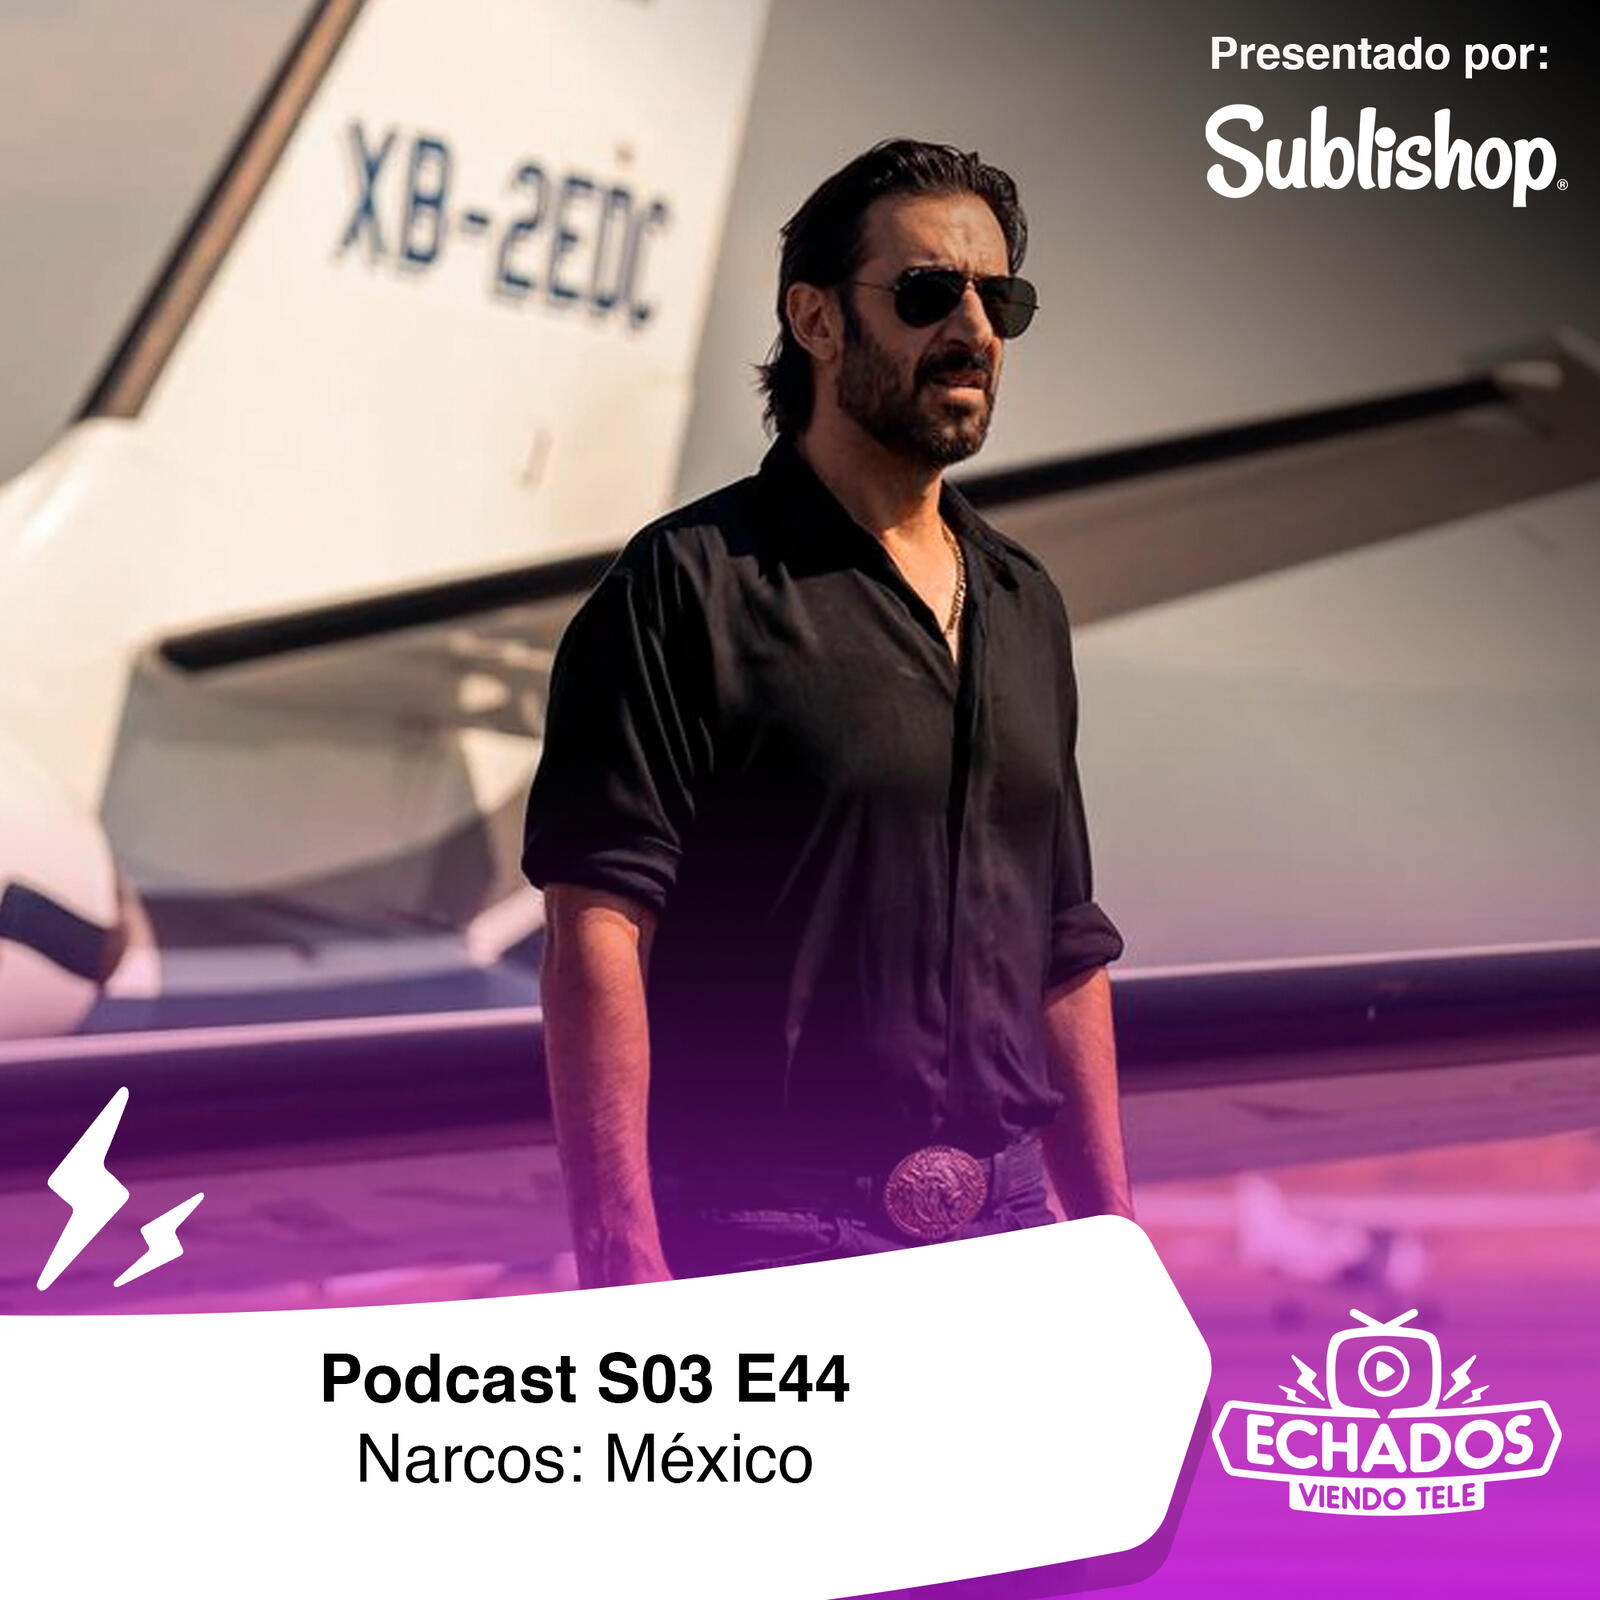 S3 Ep44: Narcos: México, es realmente una gran producción